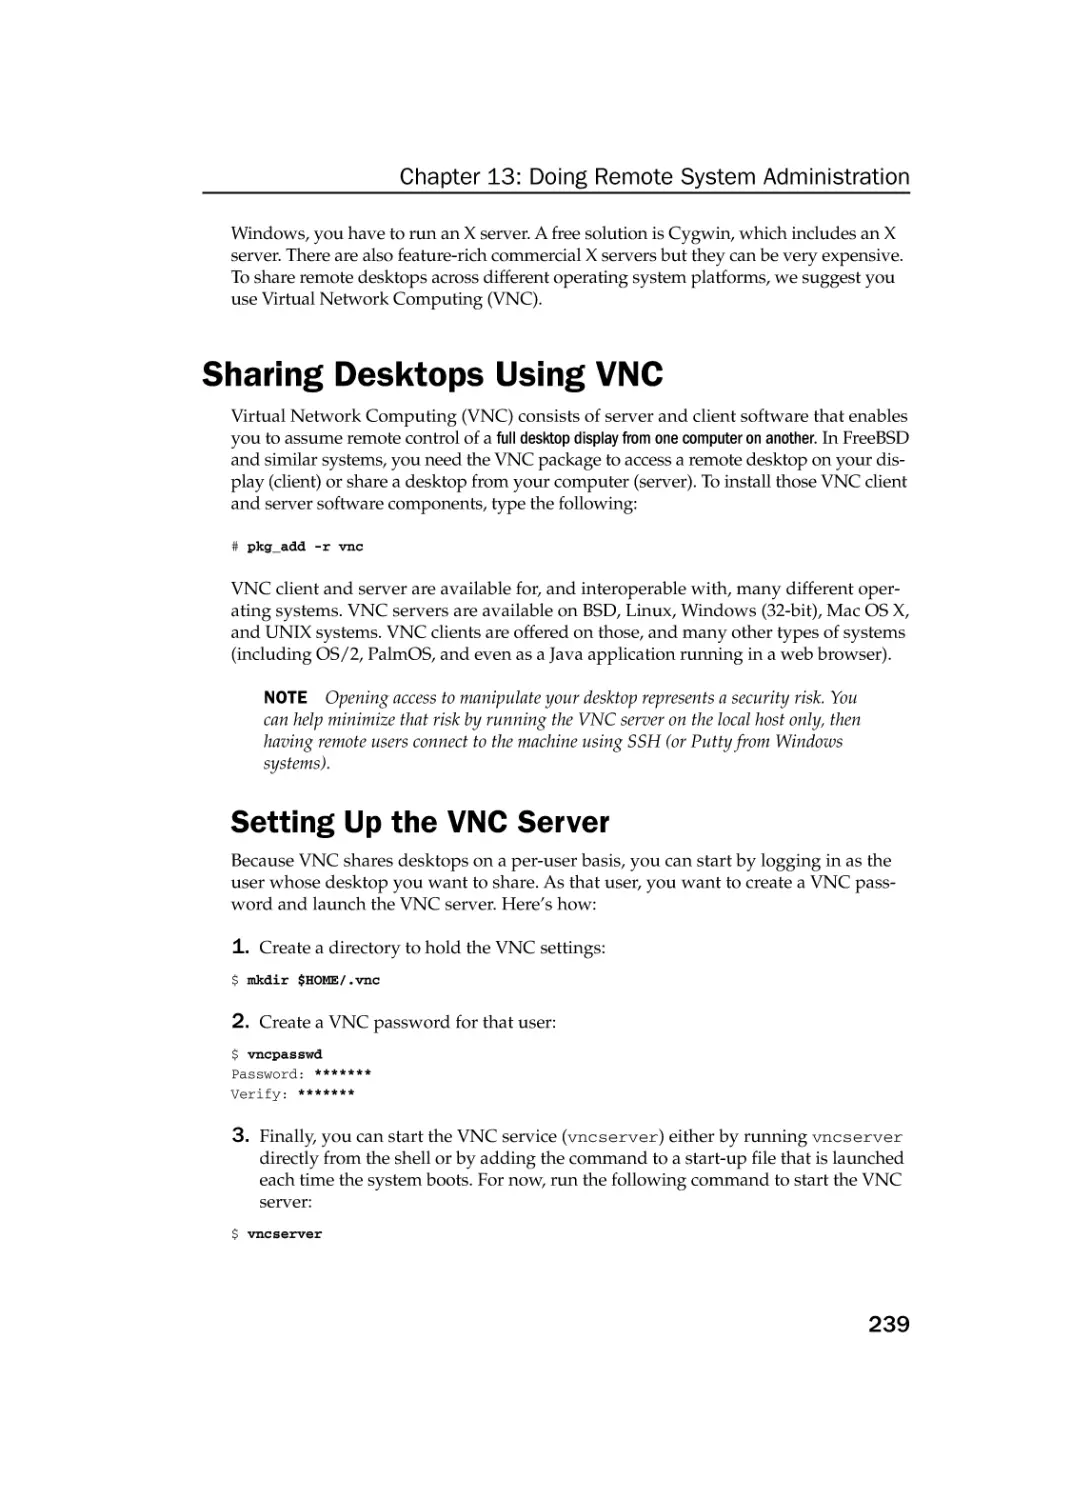 Sharing Desktops Using VNC